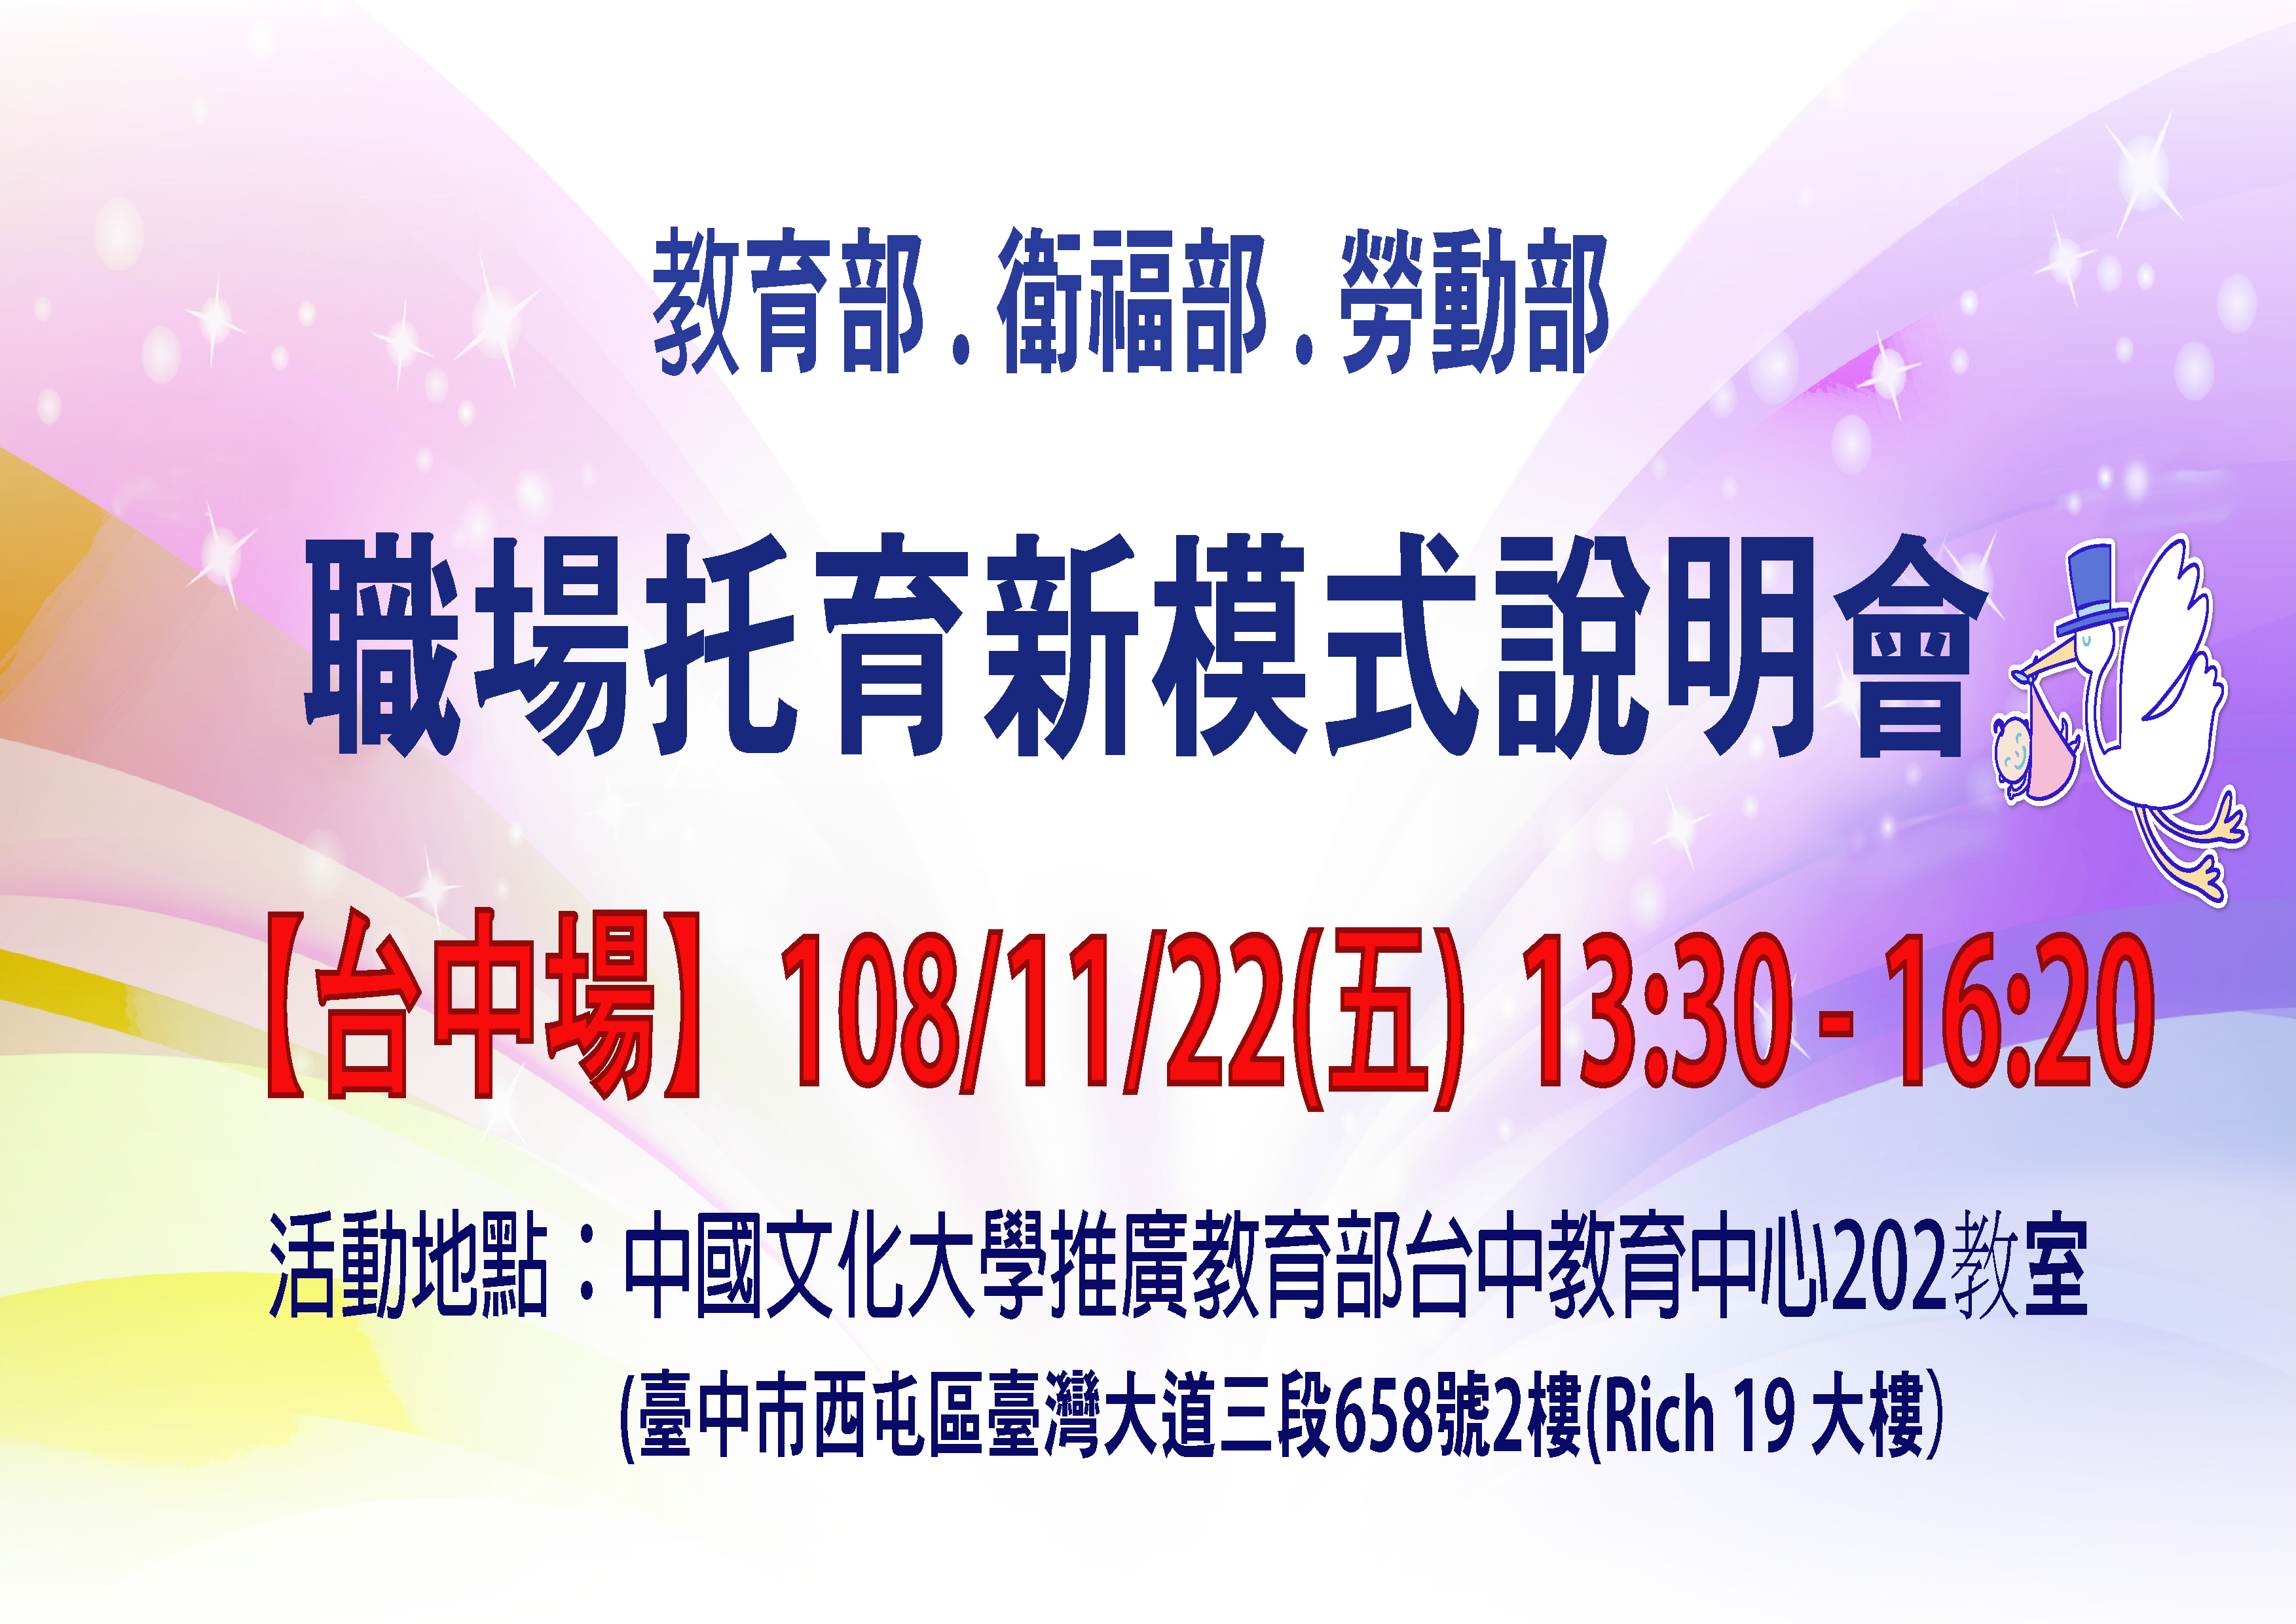 「職場托育新模式」說明會-11/22台中場